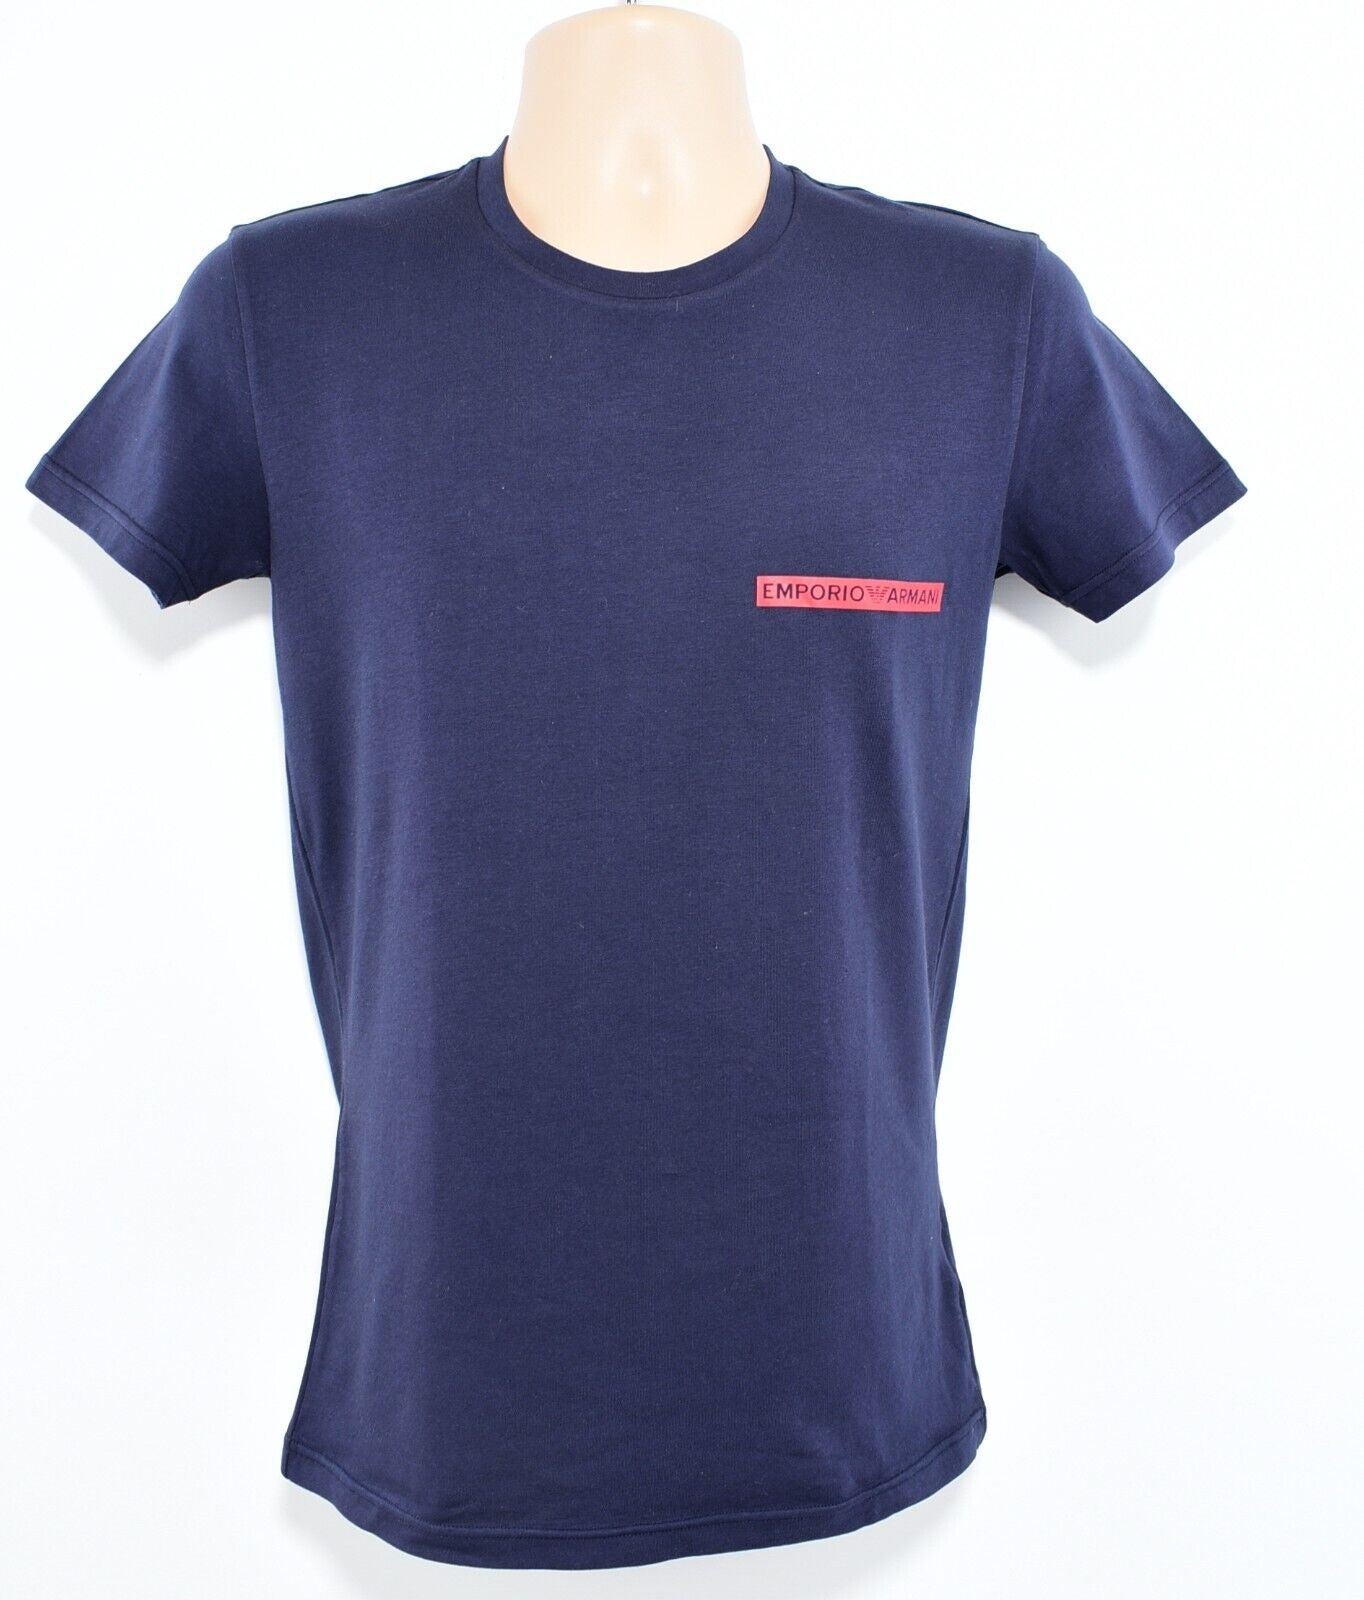 EMPORIO ARMANI Underwear: Mens Crew Neck Cotton T-shirt, Navy Blue, size M